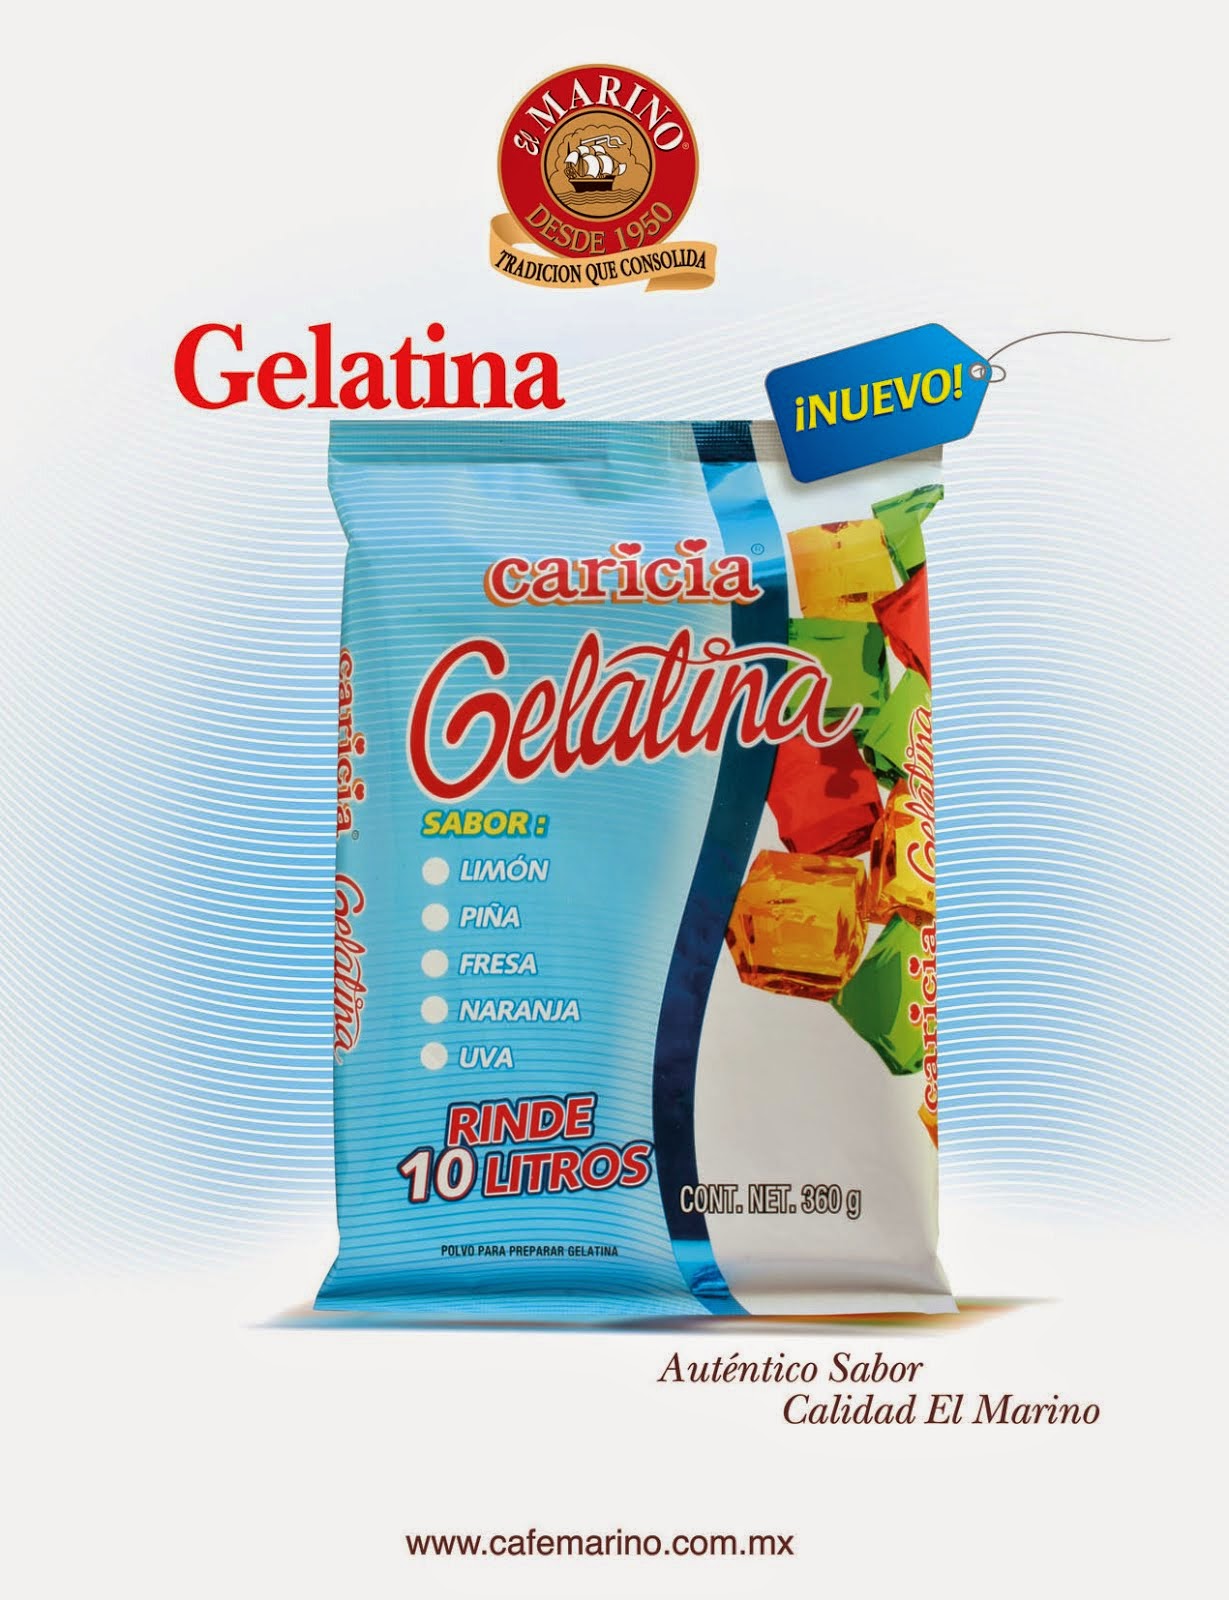 Nueva Presentación "Gelatina Caricia"